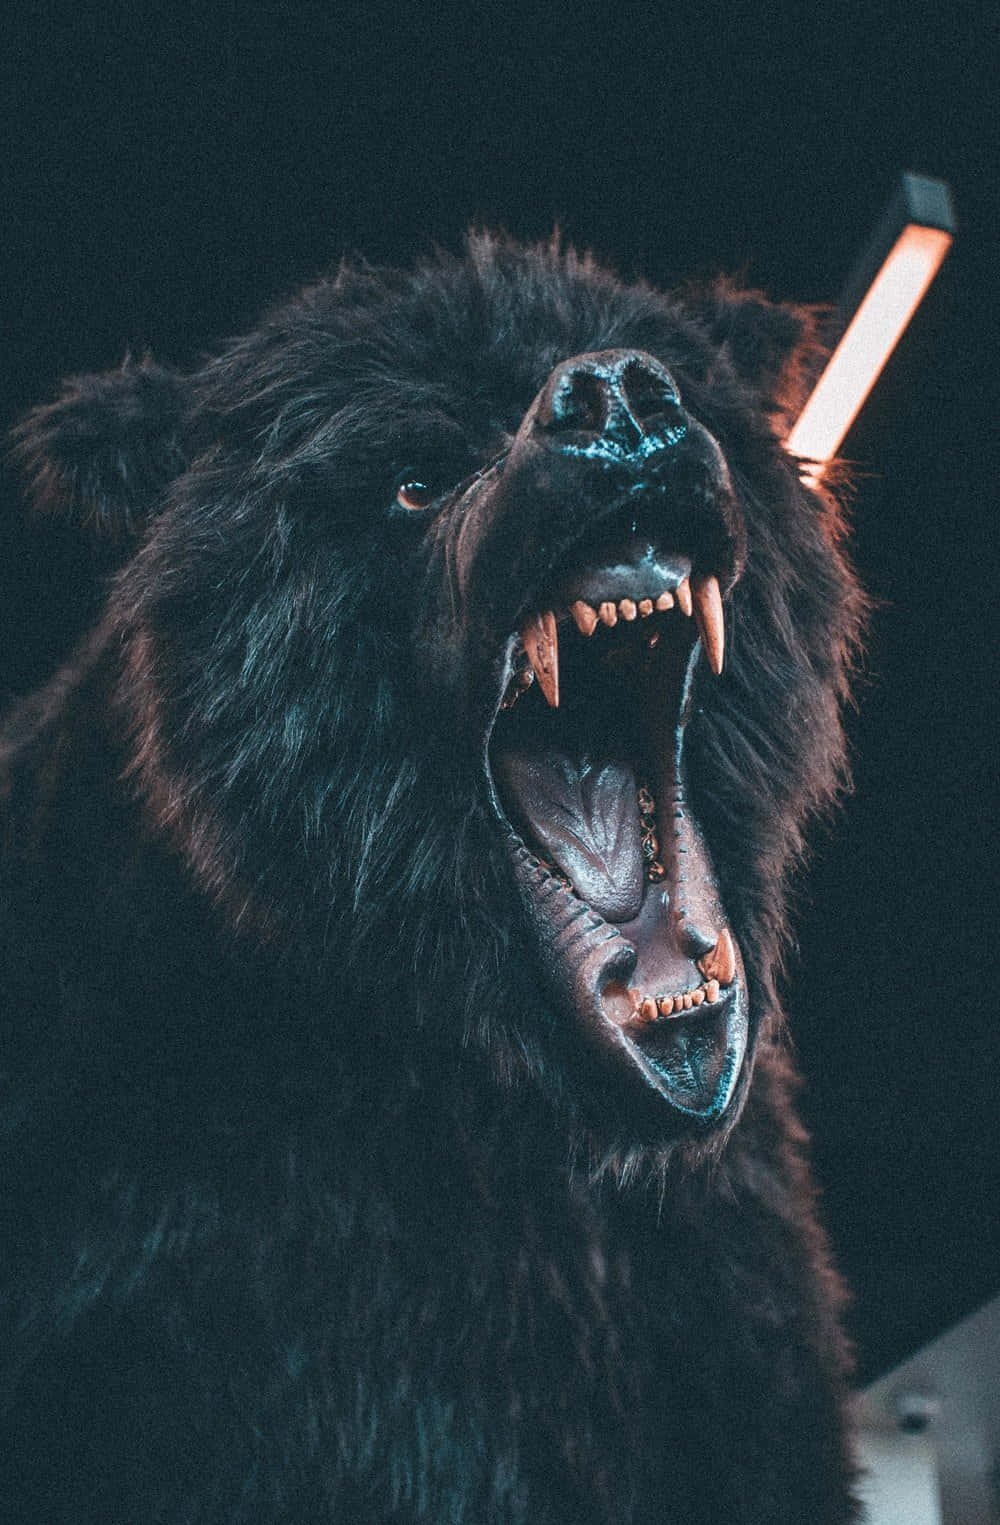 Coolabjörnen Som Morrar. Wallpaper